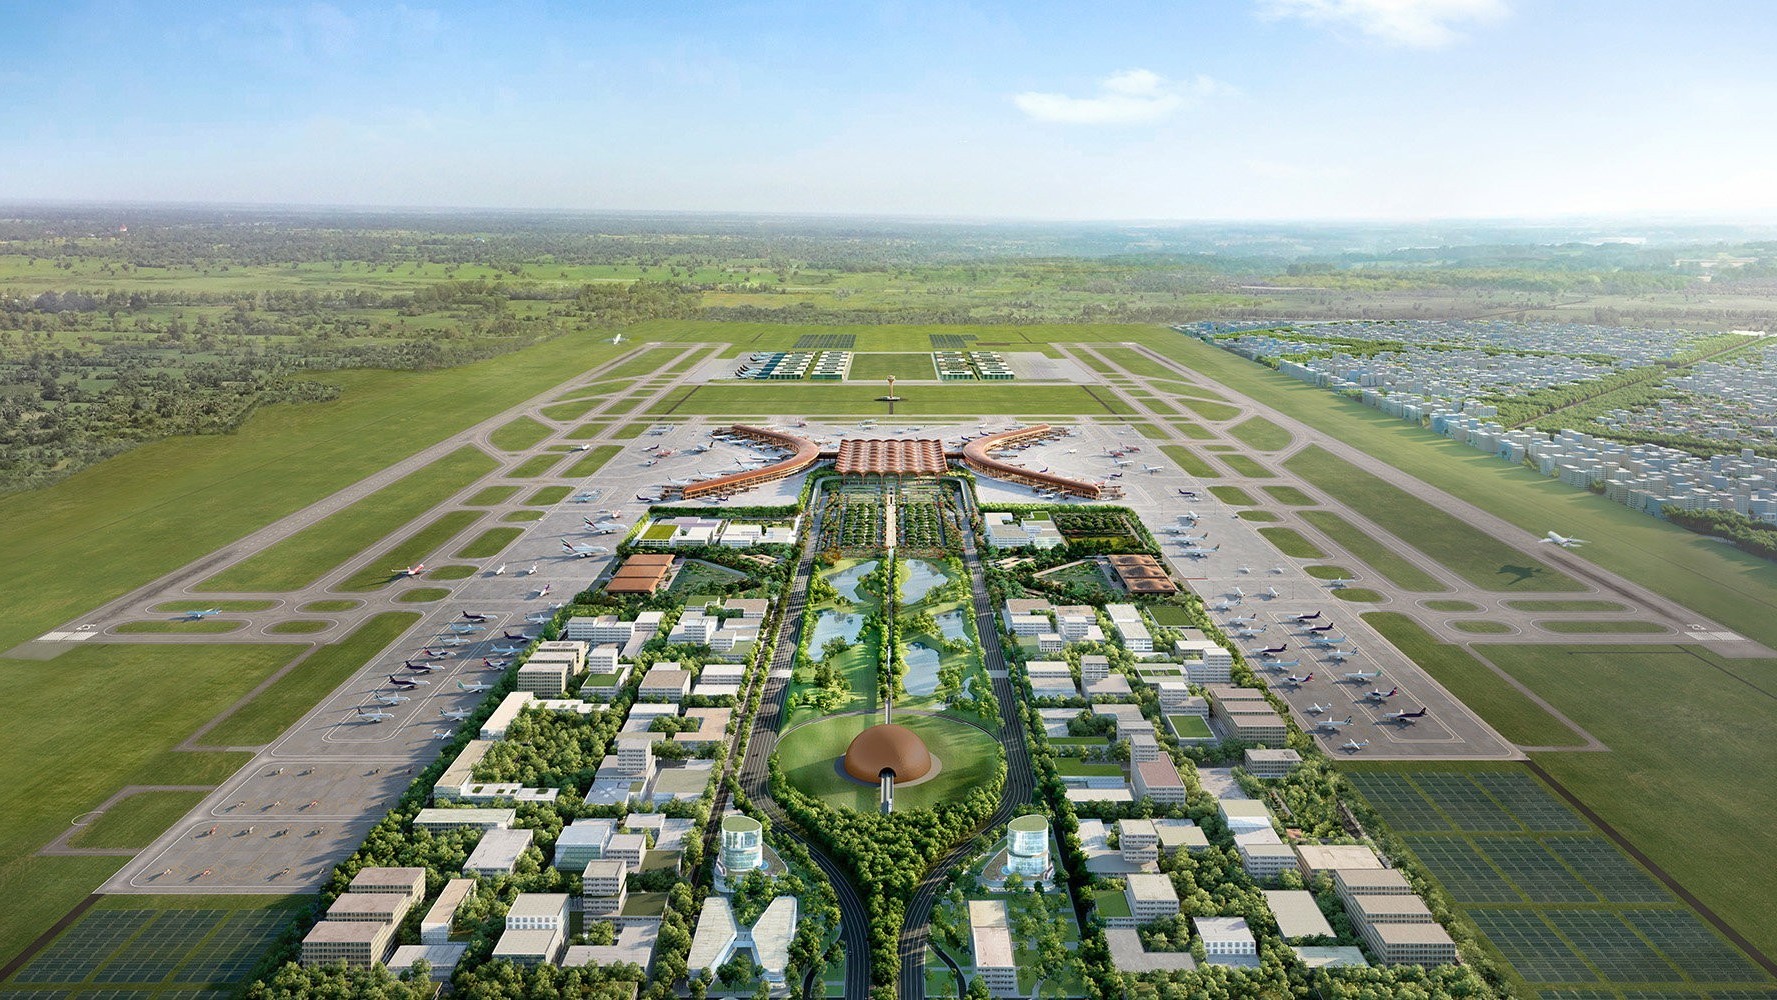 L'aéroport de Phnom Phen est conçu de manière à pouvoir être agrandi relativement facilement par la suite.